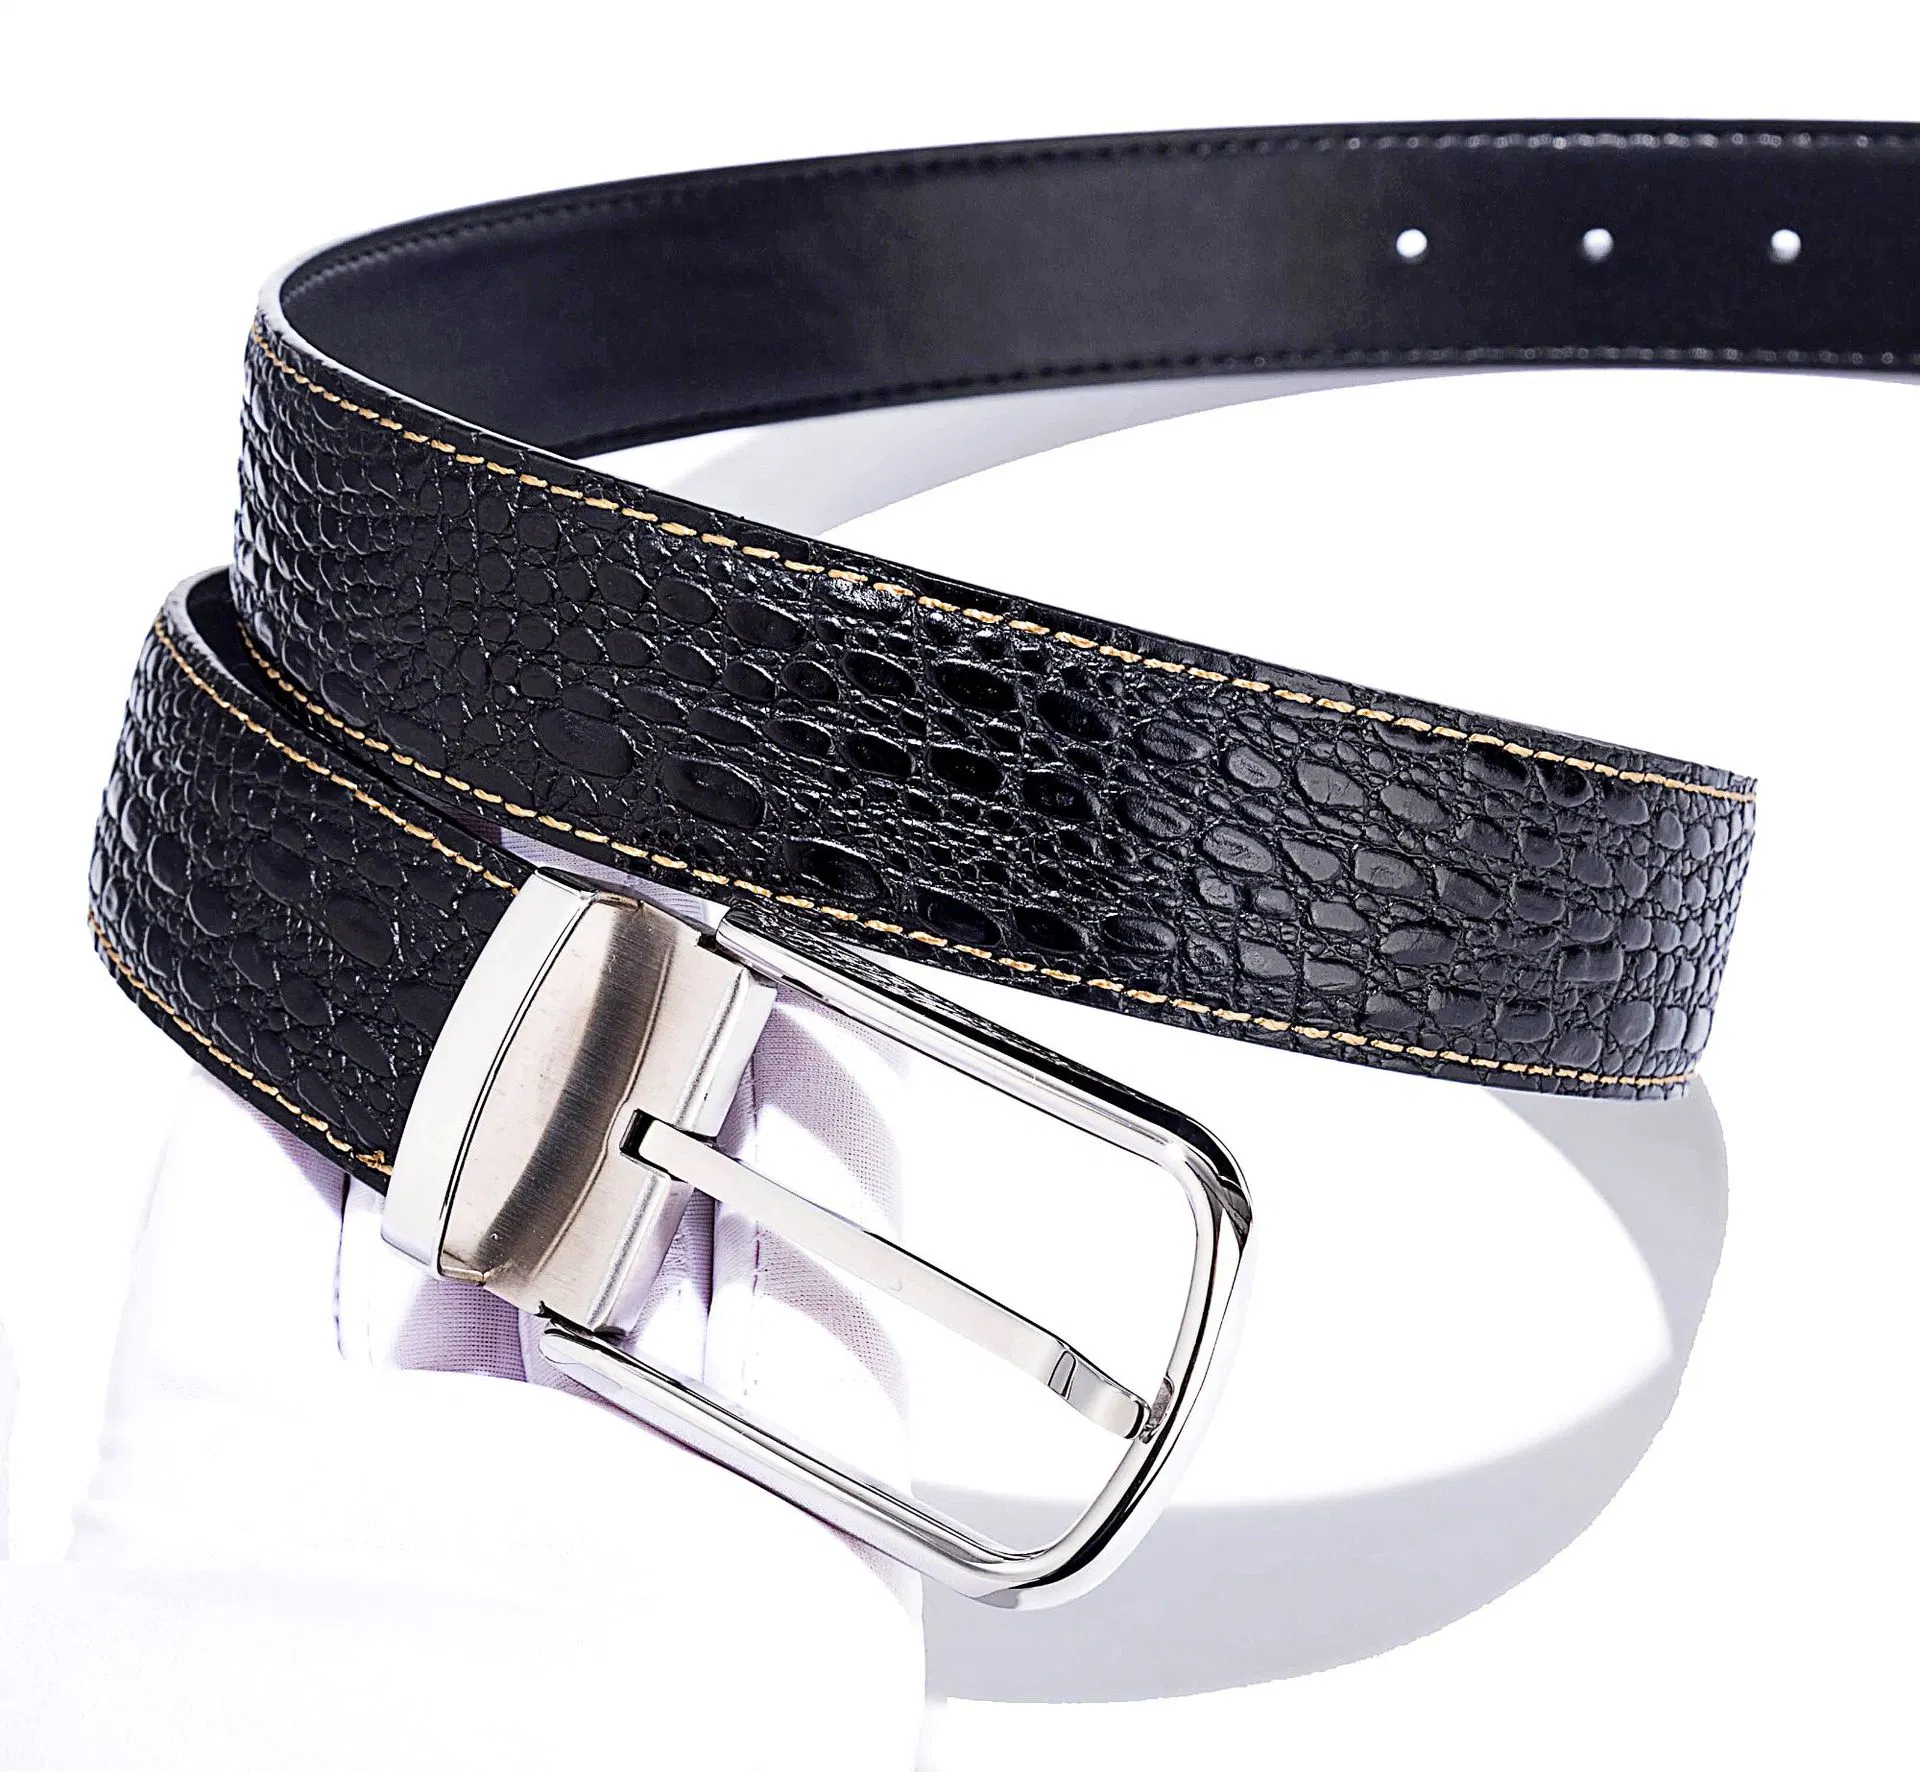 Chinese Men's Fashion Black Cowhide Genuine Leather Belt Men Genuine Pin Buckle Leather Belts